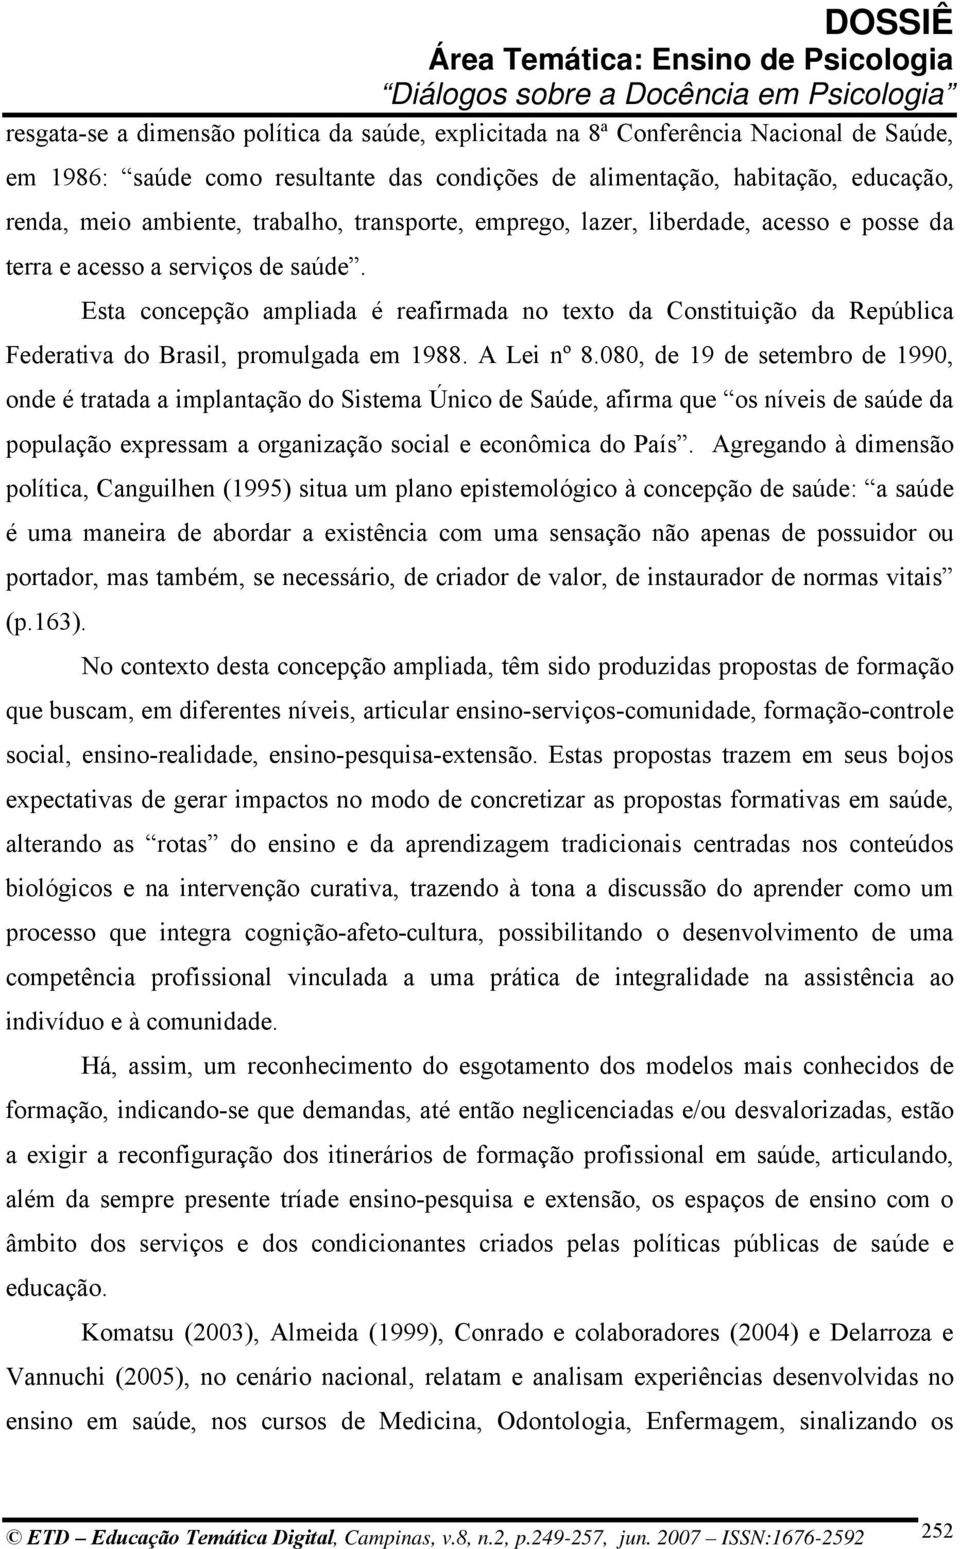 Esta concepção ampliada é reafirmada no texto da Constituição da República Federativa do Brasil, promulgada em 1988. A Lei nº 8.